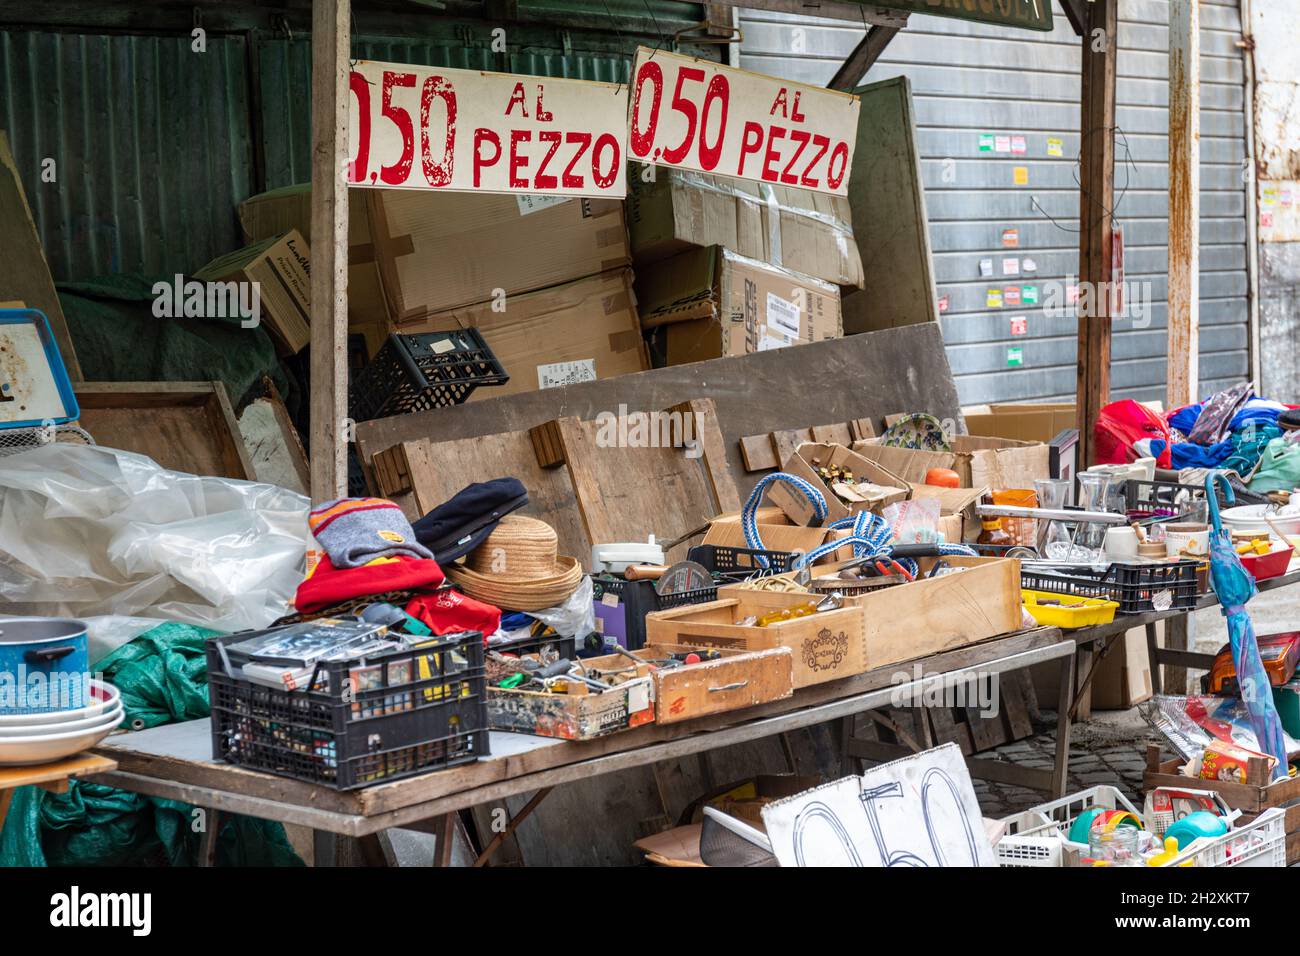 0,5 al pezzo. Articles divers à vendre pour 50 cents sur Clivio Portuense dans le quartier Trastevere de Rome, Italie. Banque D'Images